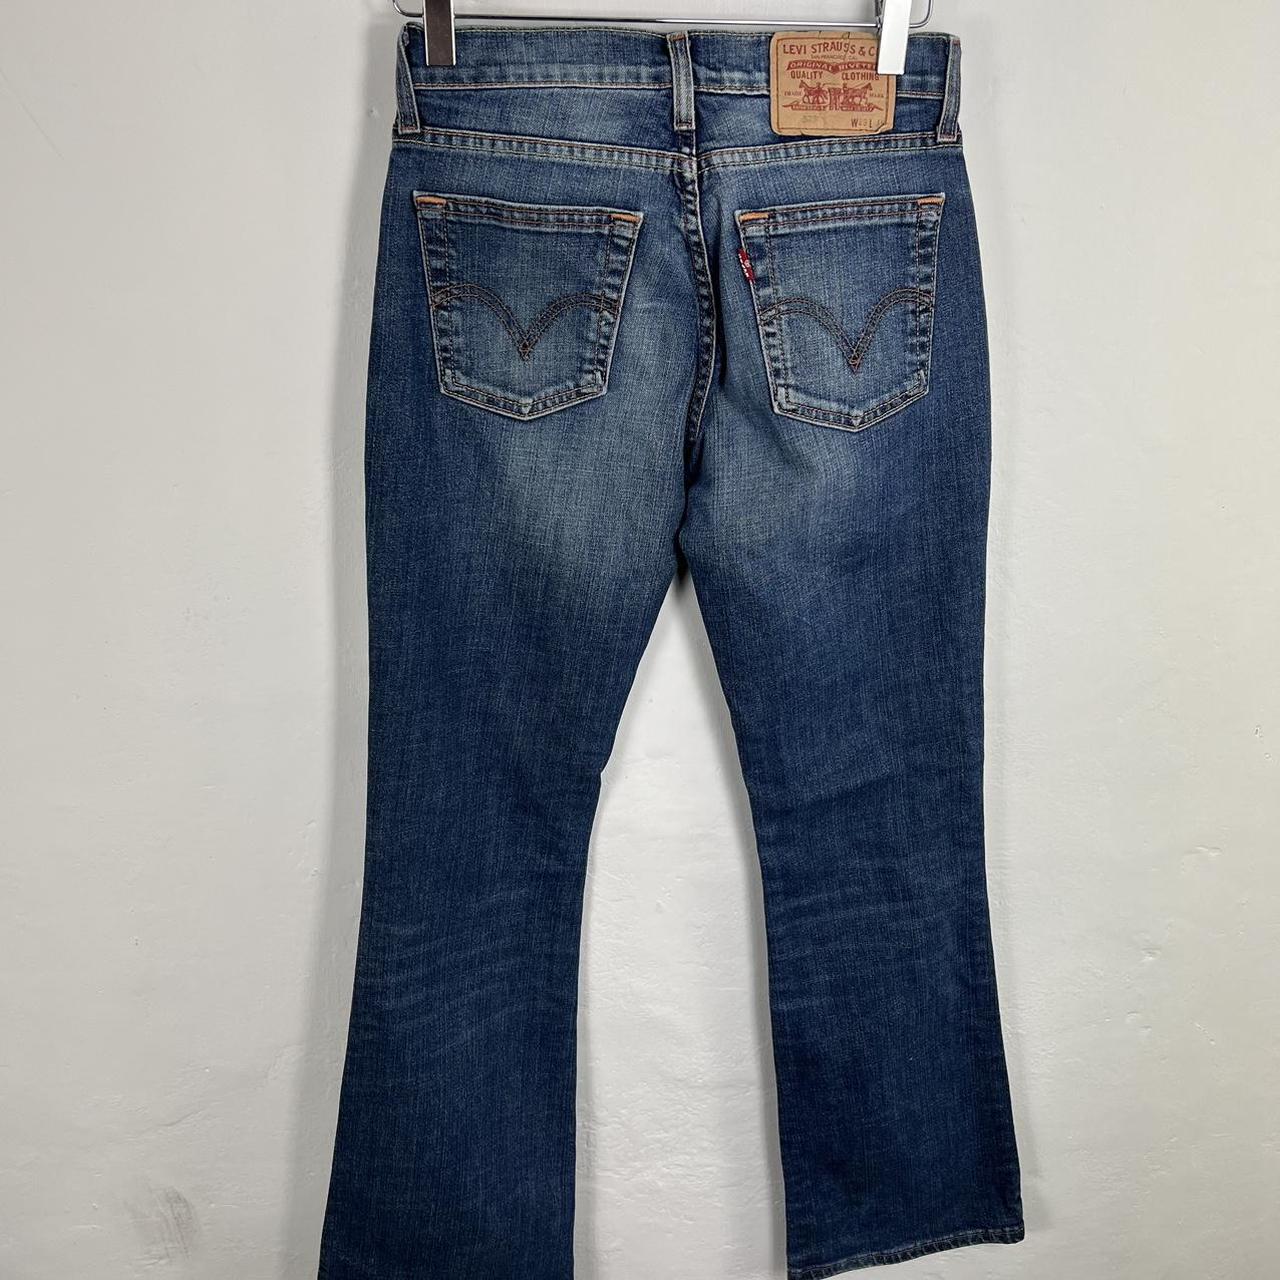 Levi’s 523 jeans 28x34